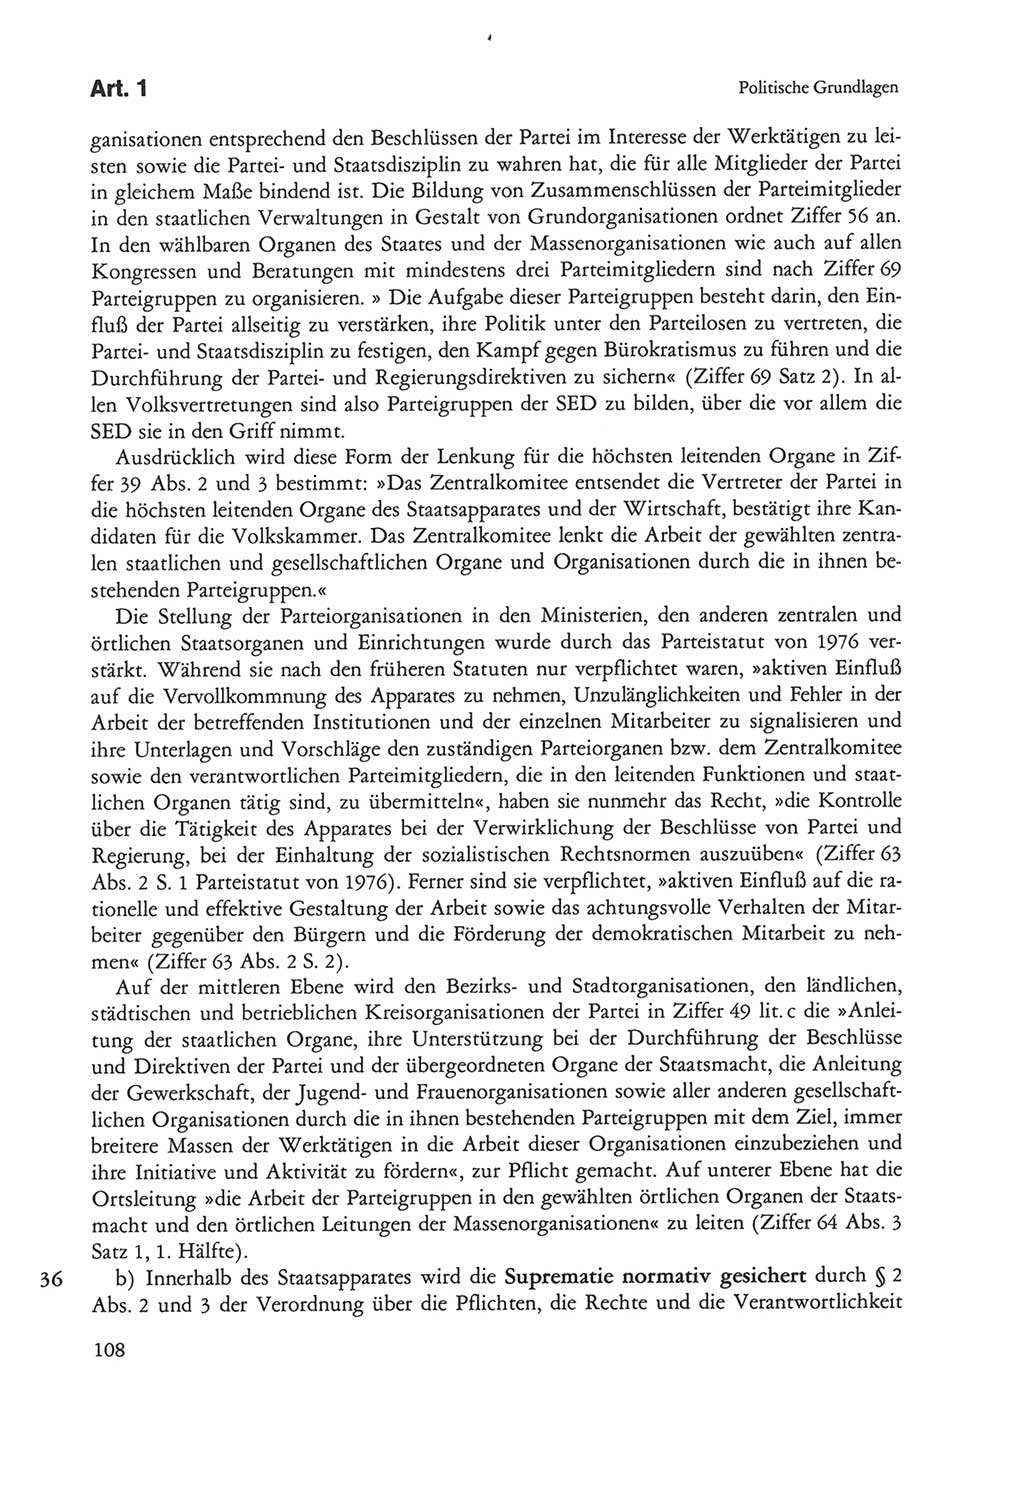 Die sozialistische Verfassung der Deutschen Demokratischen Republik (DDR), Kommentar 1982, Seite 108 (Soz. Verf. DDR Komm. 1982, S. 108)